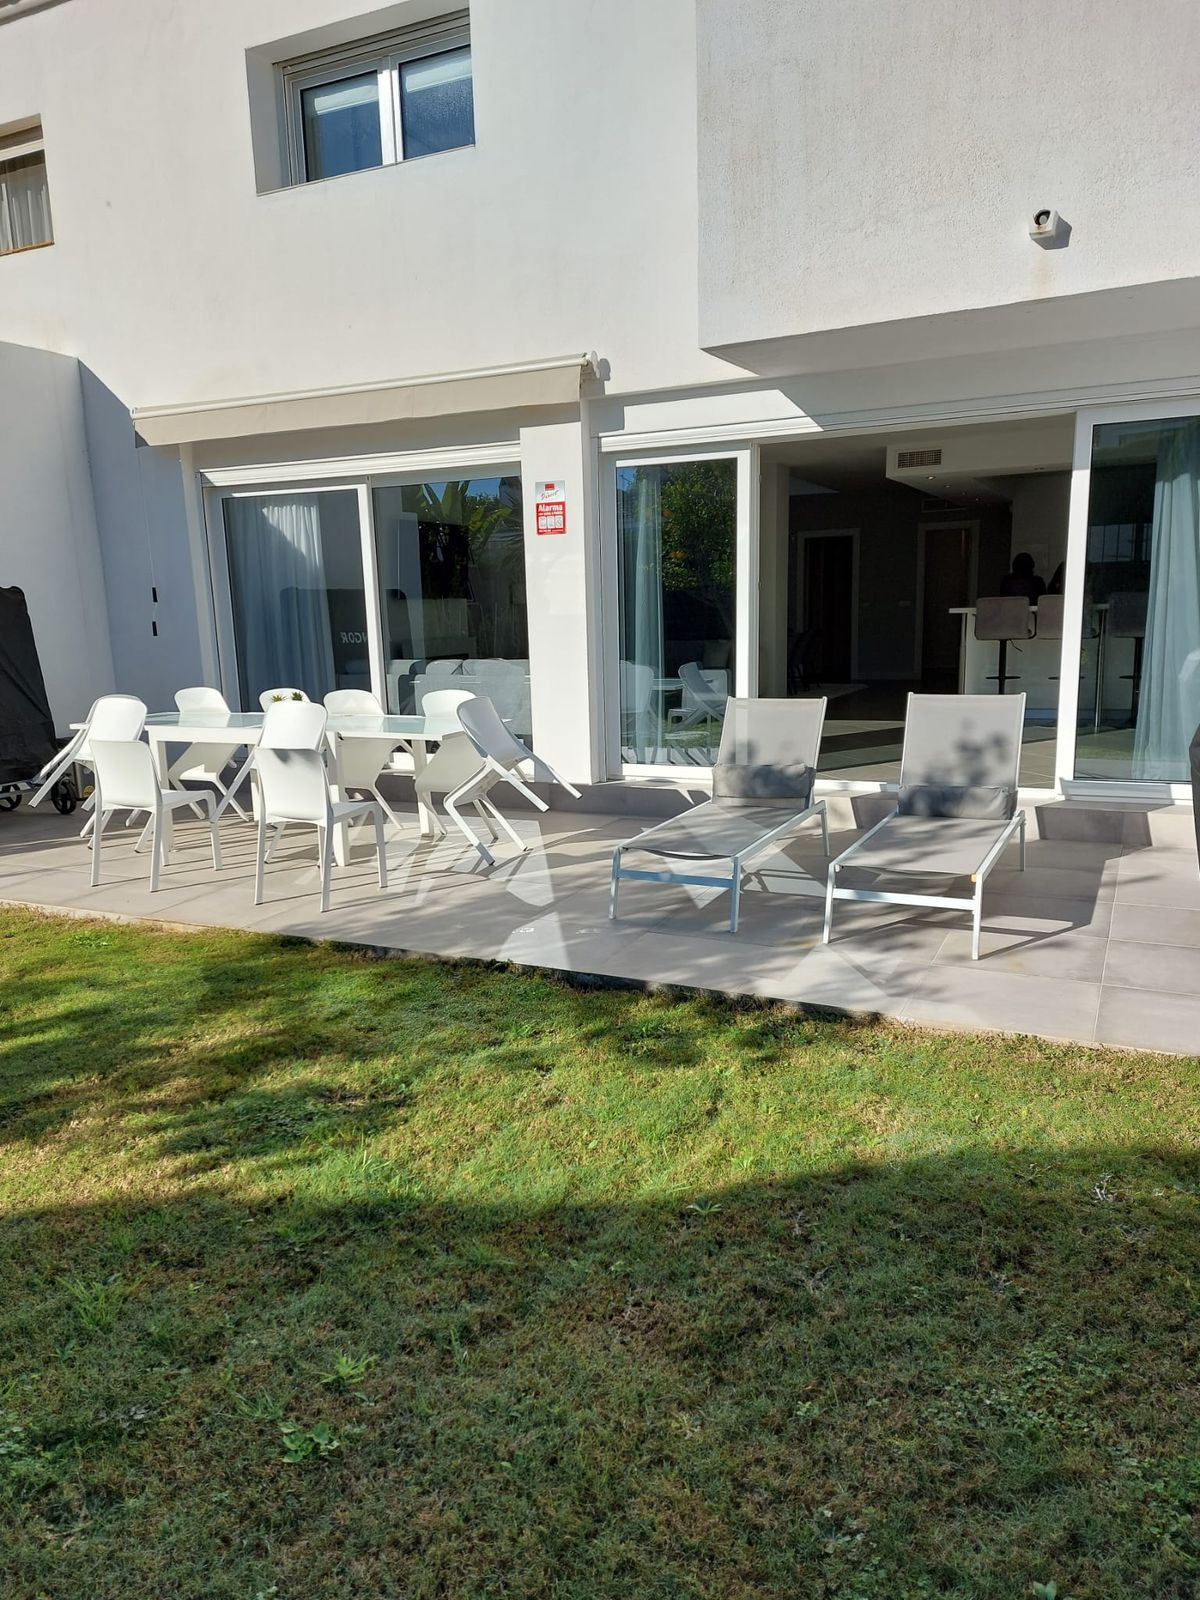 4 bed Property For Sale in Benahavis, Costa del Sol - thumb 3